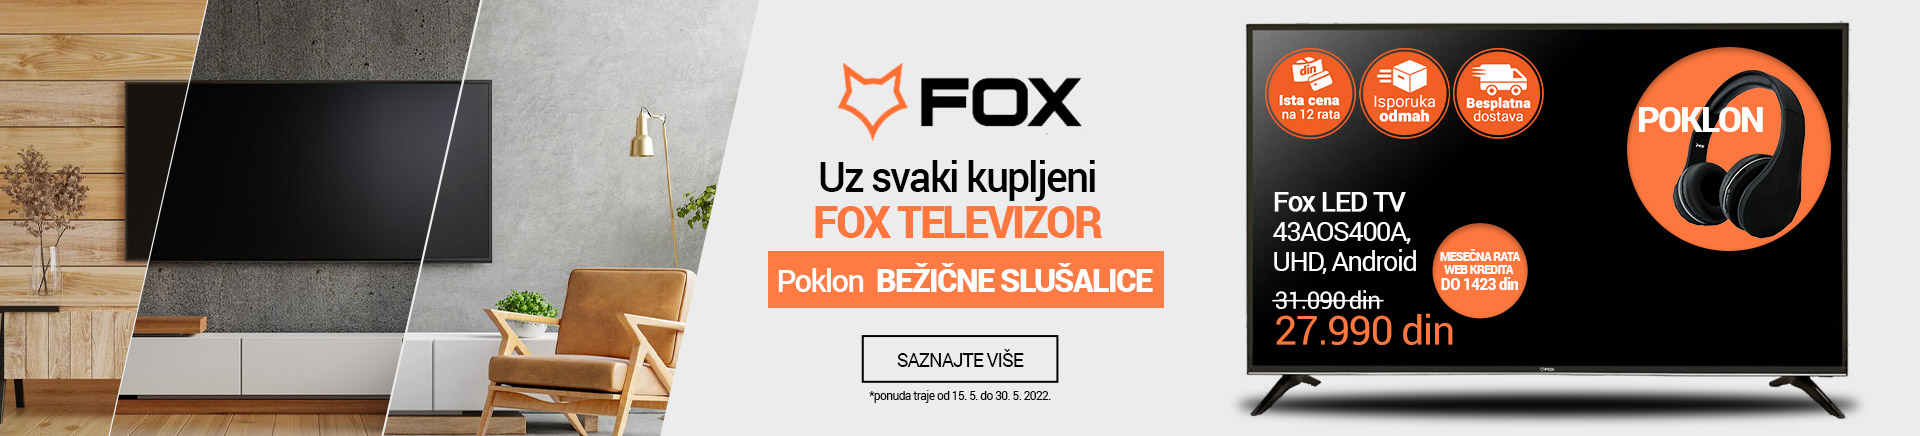 RS~Uz svaki kupljeni Fox tv poklon bezicne slusalice MOBILE 380 X 436.jpg